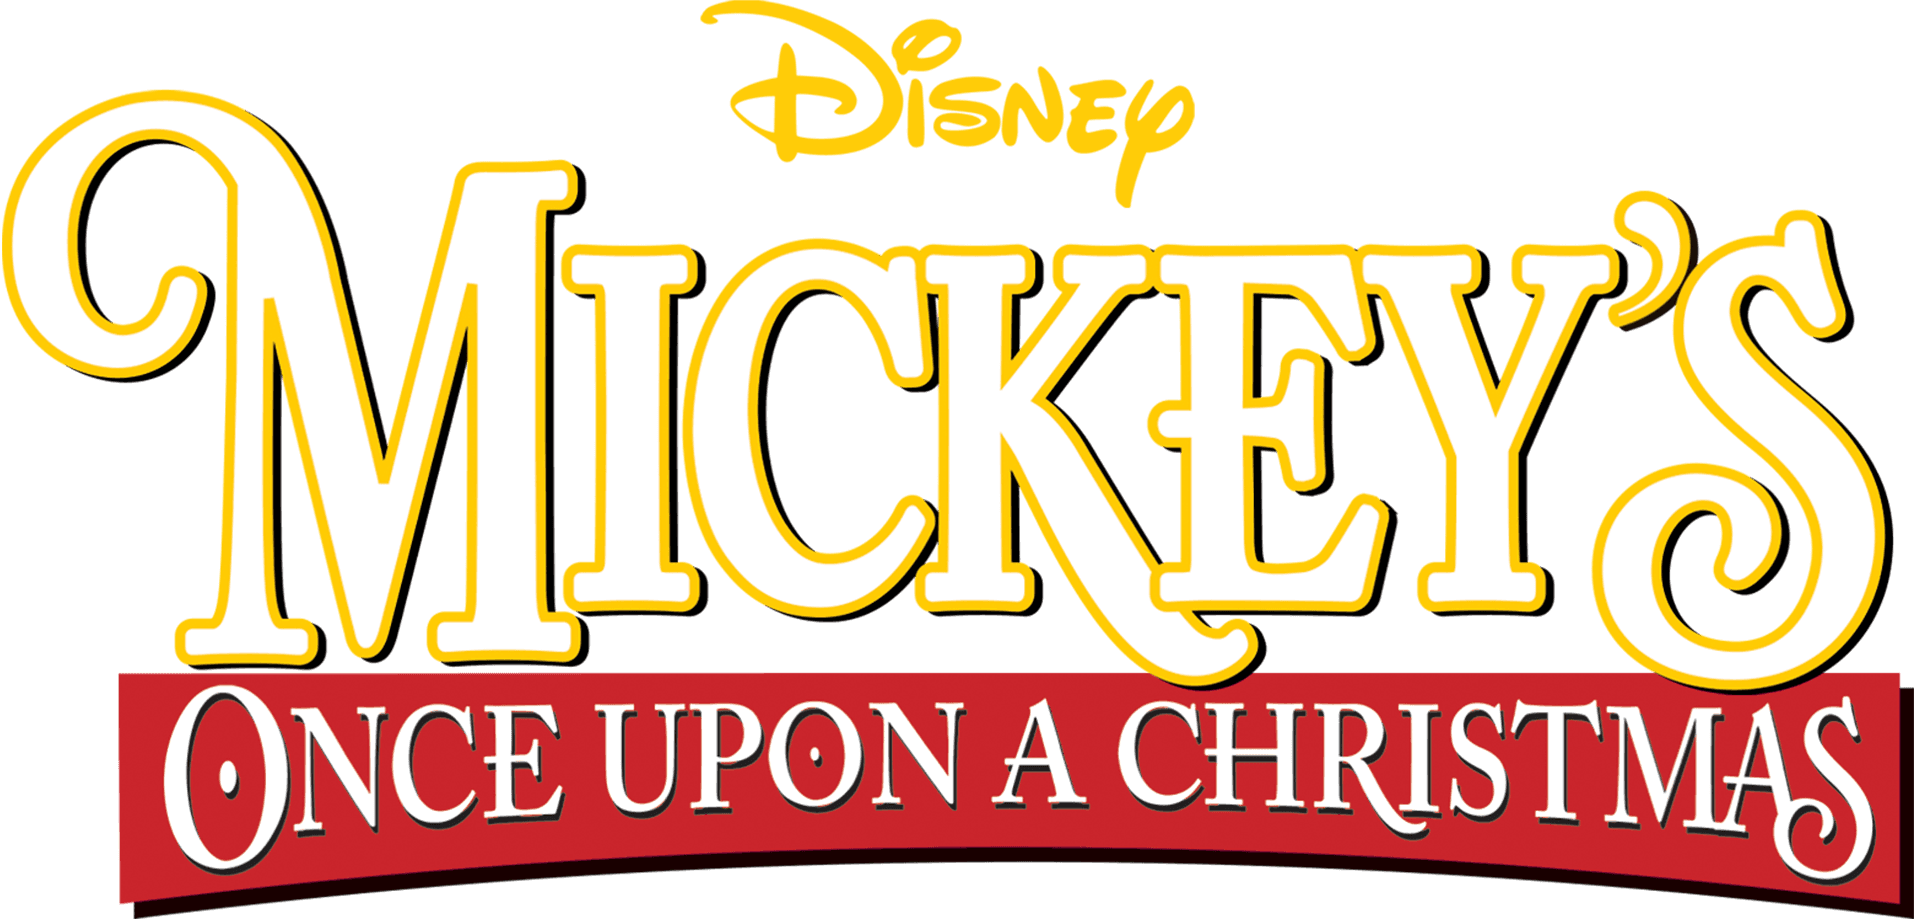 Mickey's Once Upon a Christmas logo